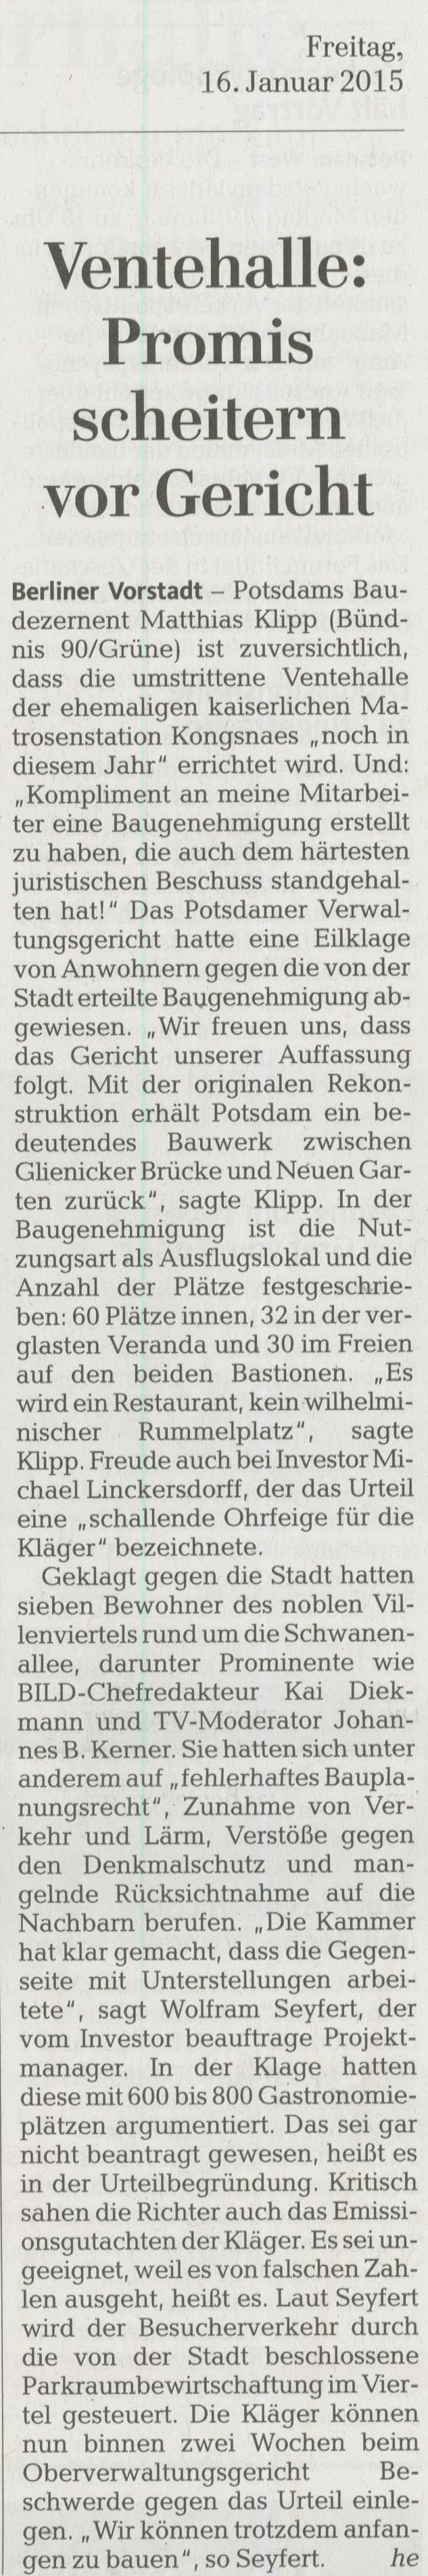 Mrkische Allgemeine - 16.01.2015